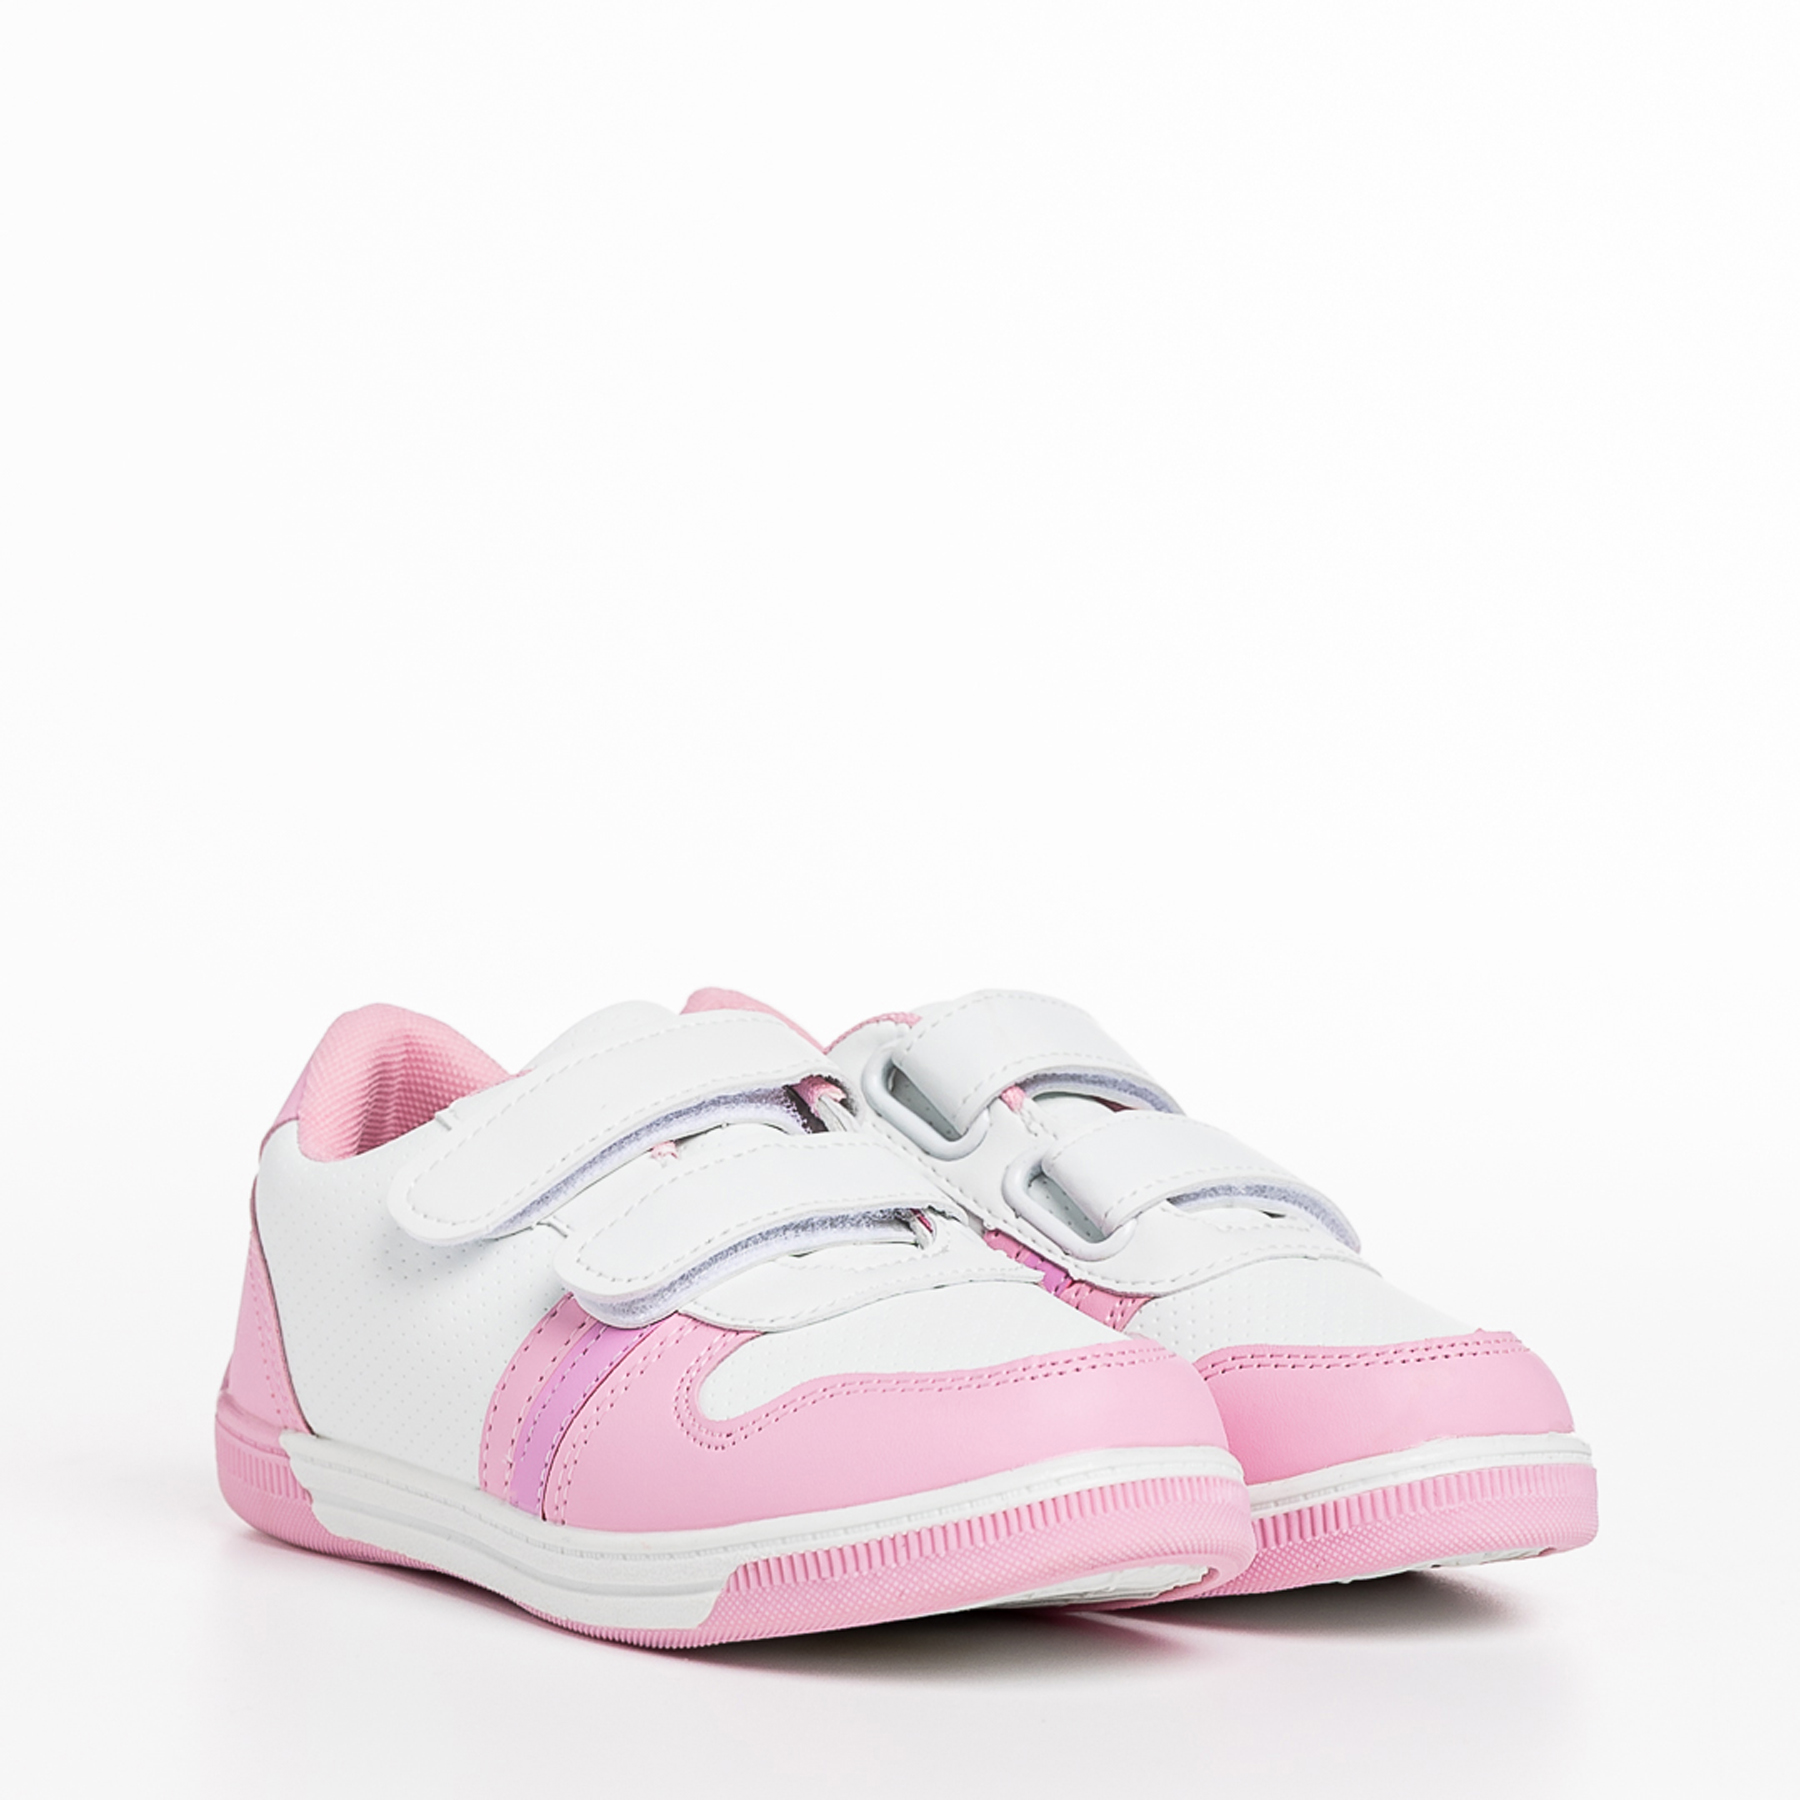 Pantofi sport copii roz cu alb din piele ecologica Buddy kalapod.net imagine reduceri